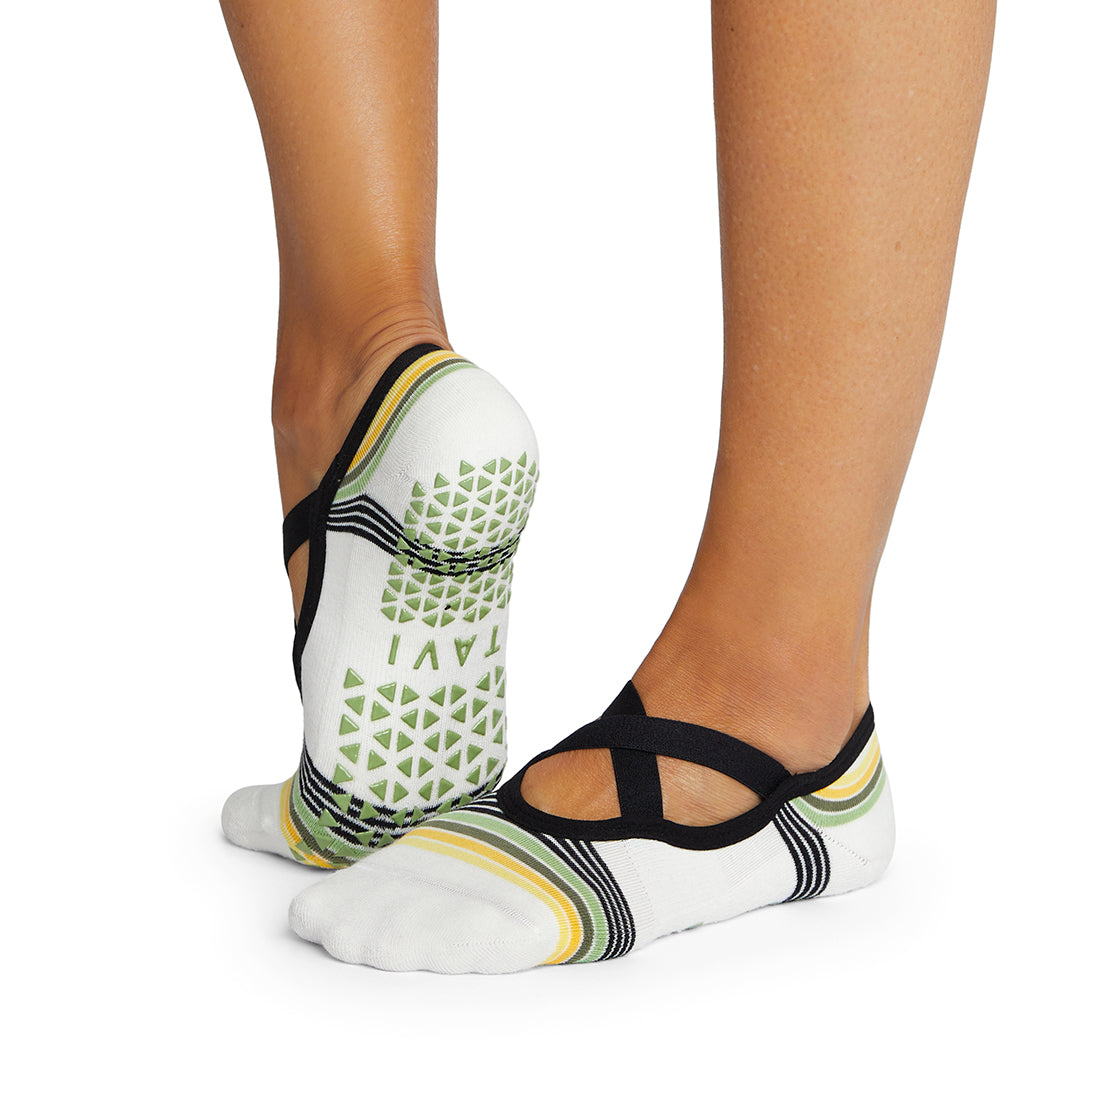 Tavi Noir Chloe Grip Yoga Socks – Ernie's Sports Experts